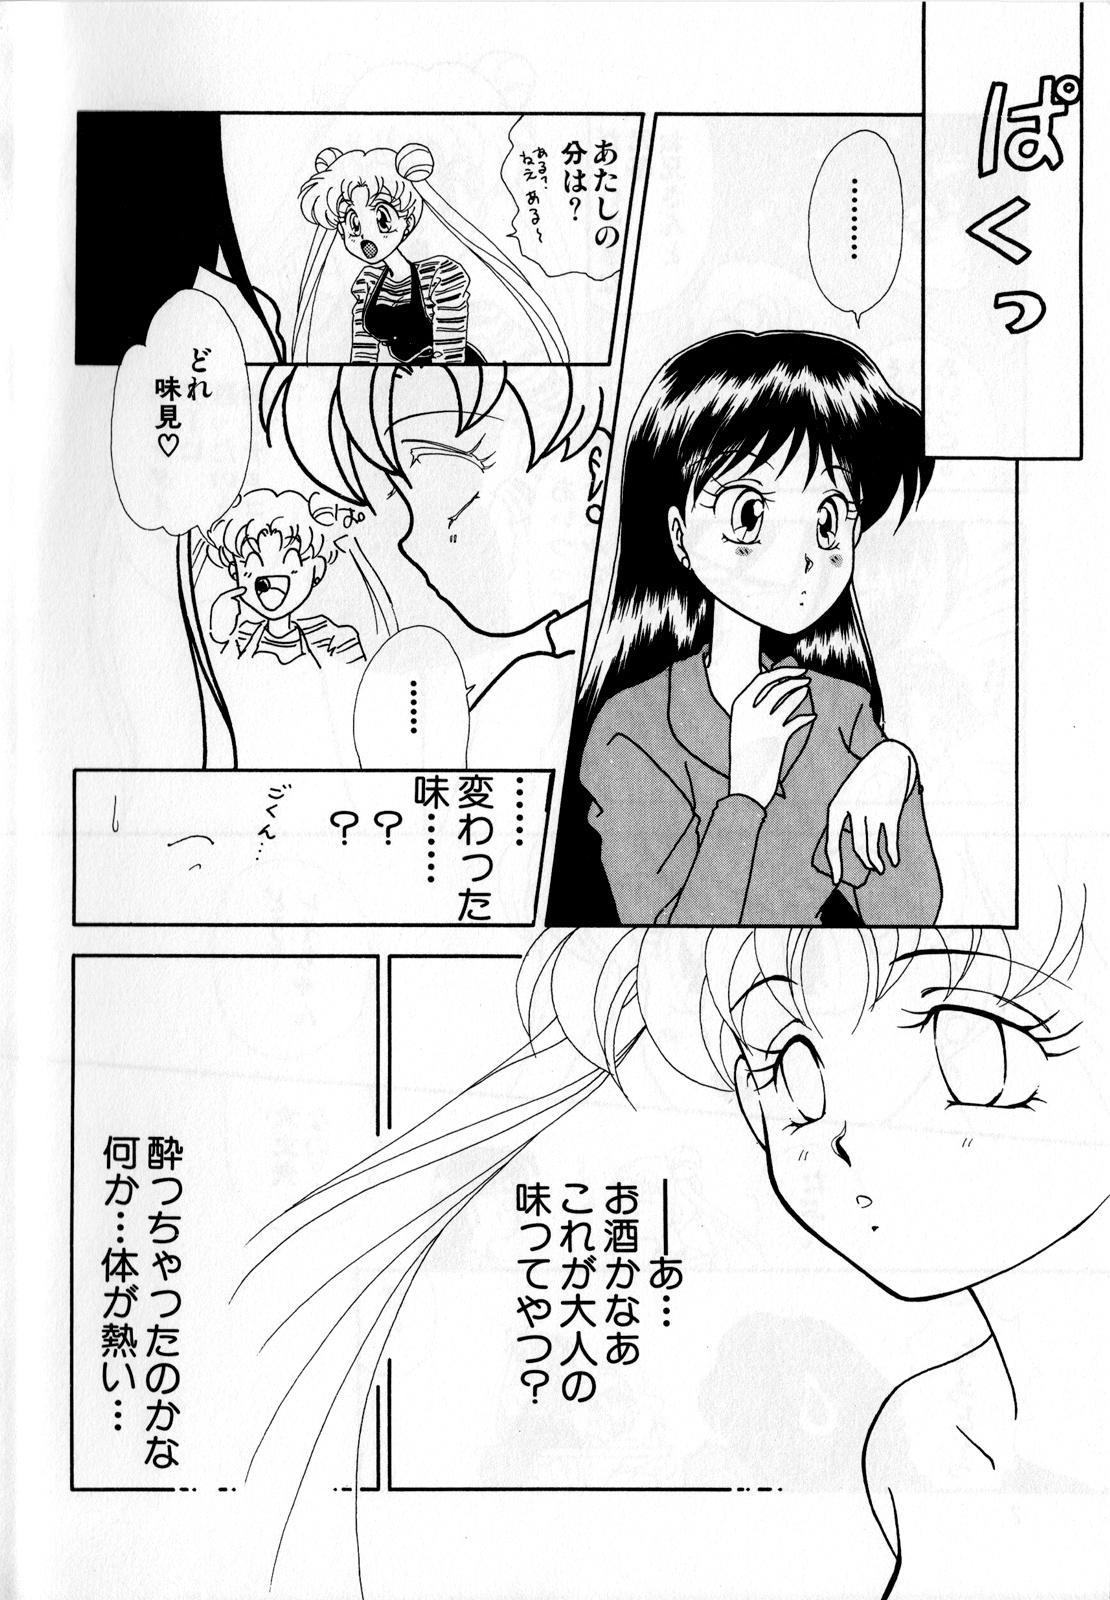 Bondagesex Lunatic Party 3 - Sailor moon Abg - Page 9